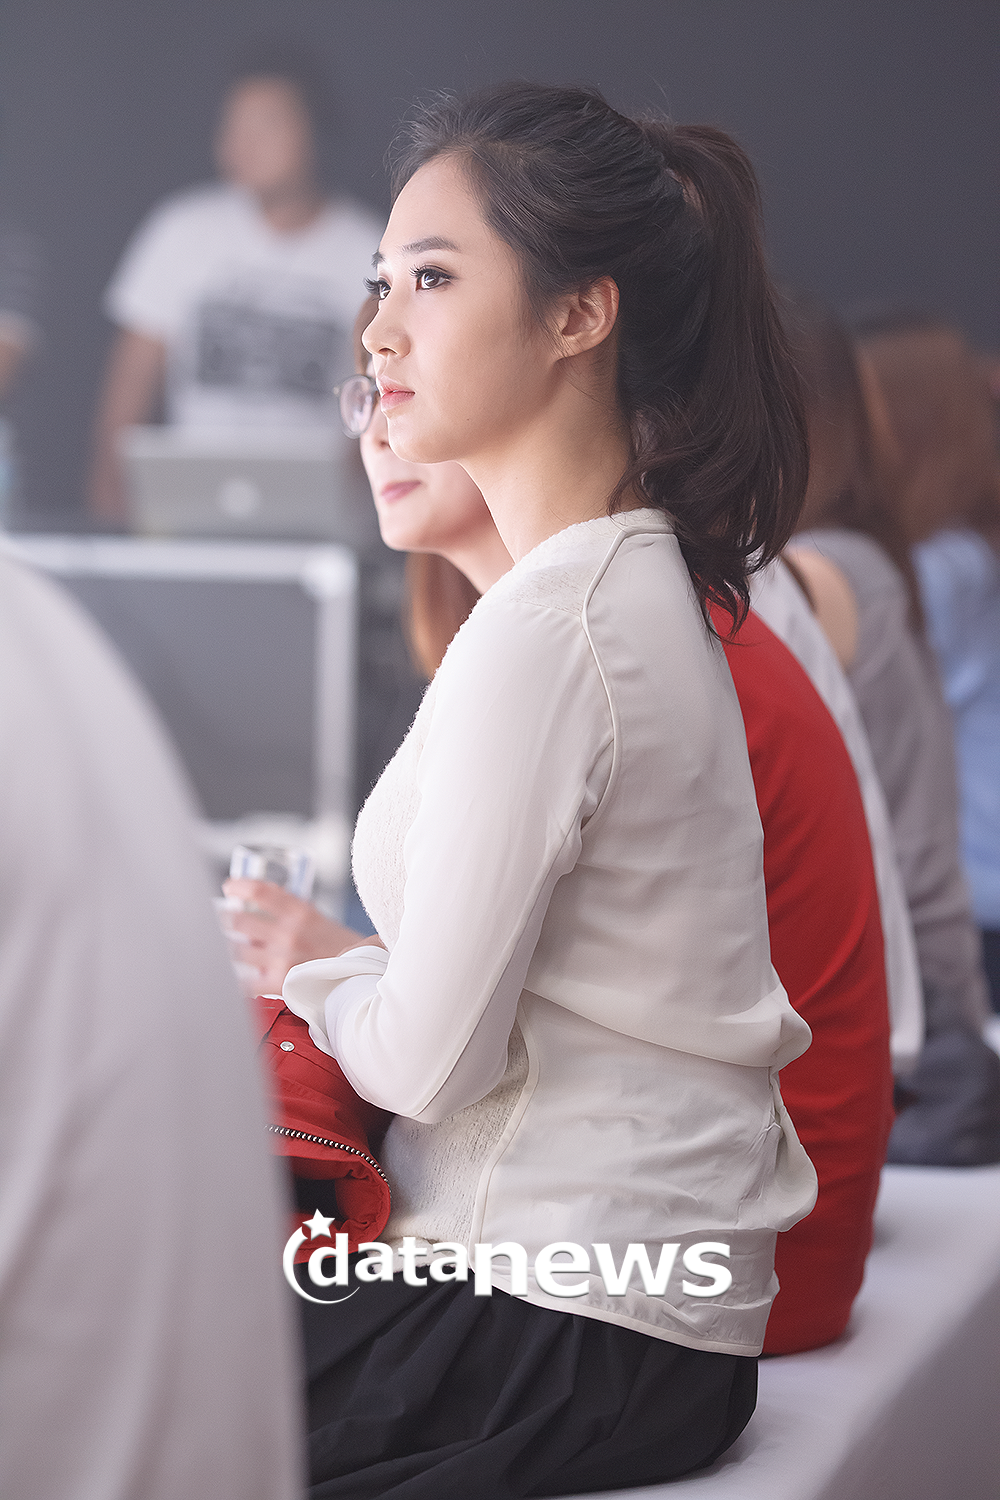 [PIC][30-08-2013]Yuri xuất hiện tại sự kiện khai trương cửa hàng "MOOSE KNUCKLES" vào chiều nay 263B0A5052213D5B15DA80